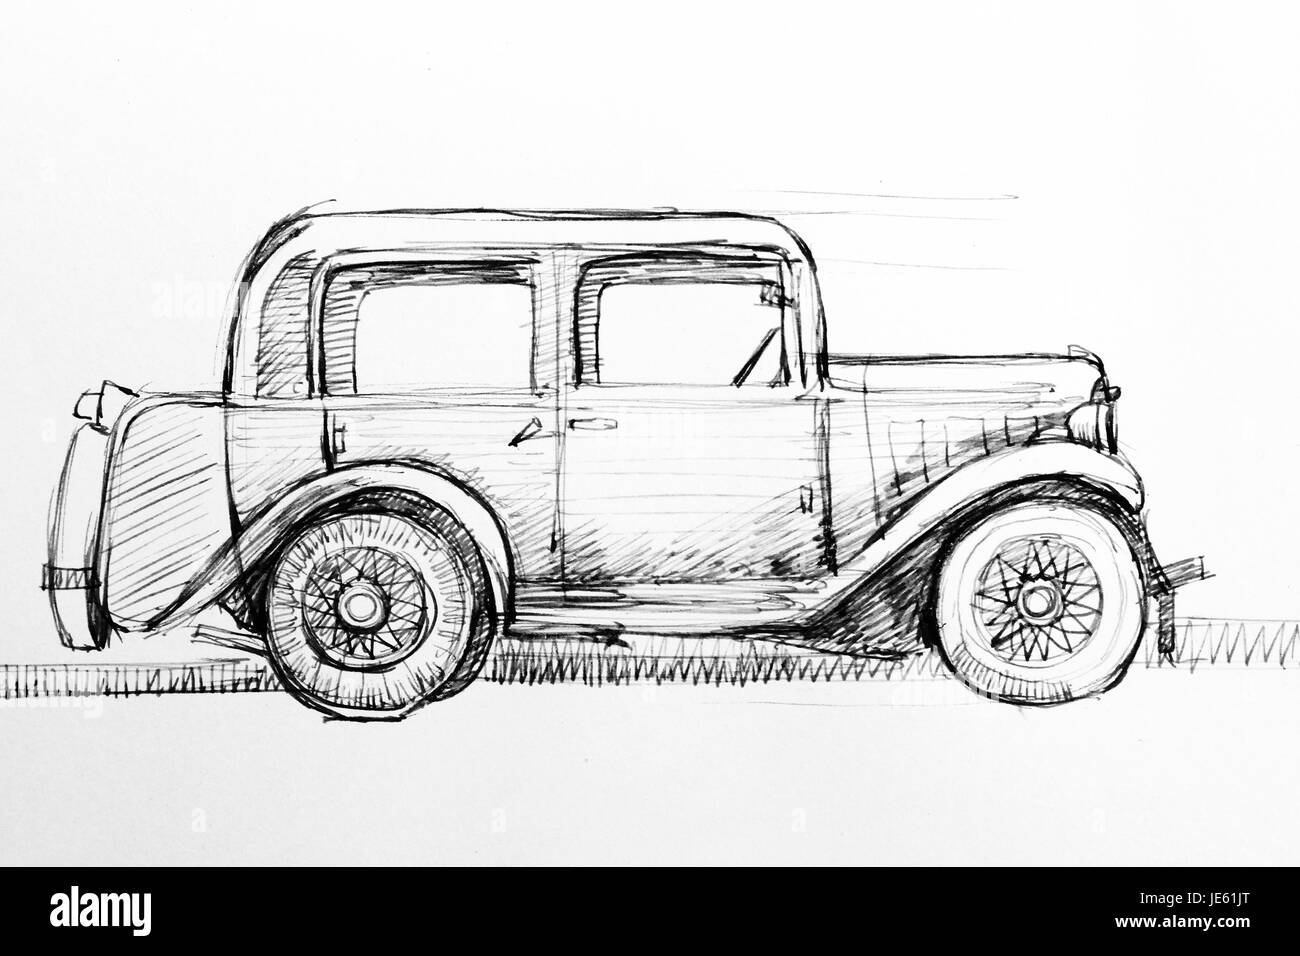 8 Pencil drawings of cars ideas  pencil drawings car drawings drawings